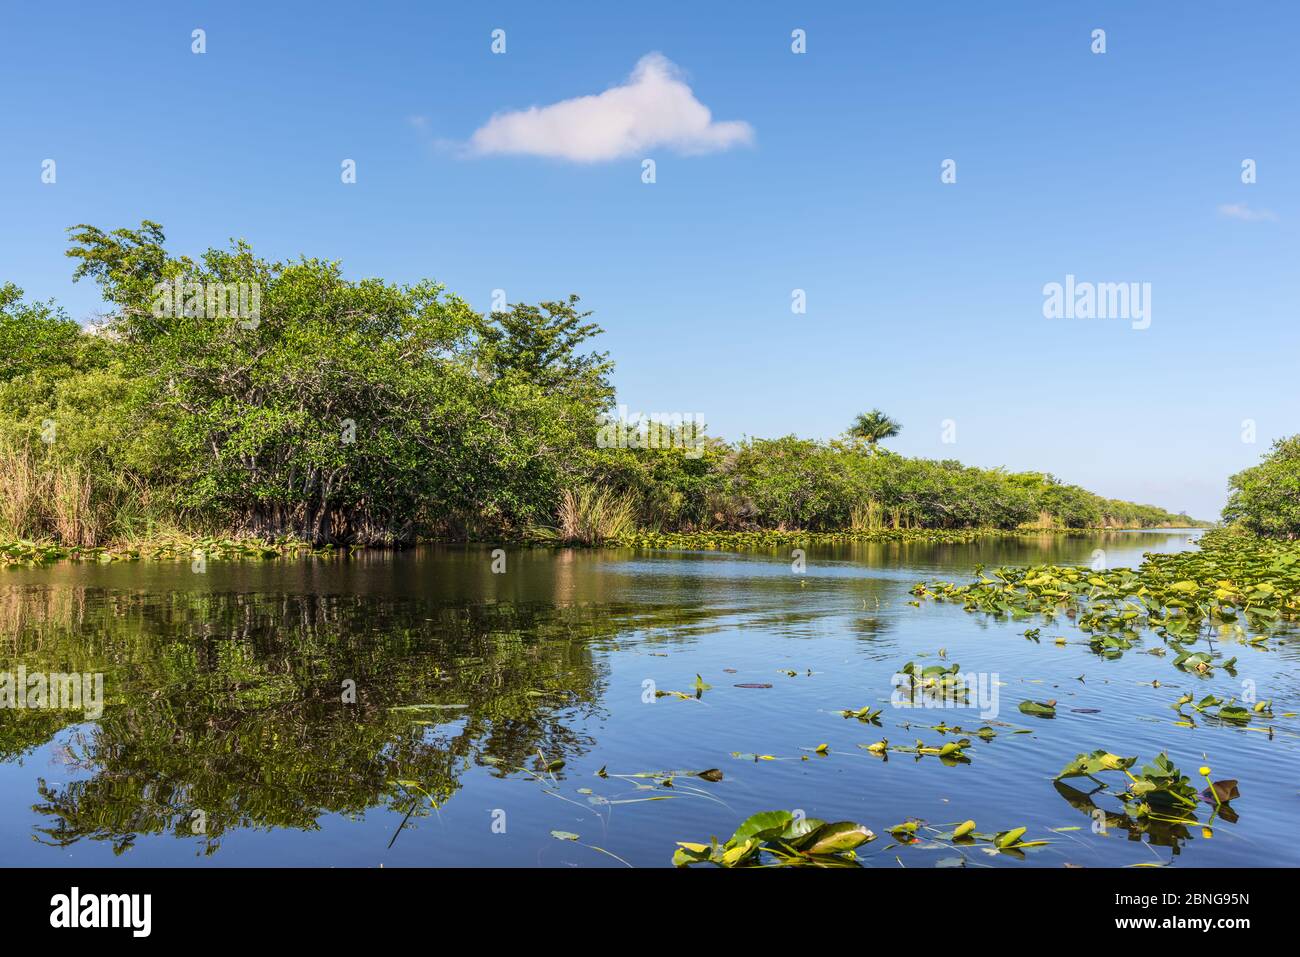 Zone humide de Floride, promenade en hydroglisseur au parc national des Everglades, aux États-Unis. Lieu populaire pour les touristes, la nature sauvage et les animaux. Banque D'Images